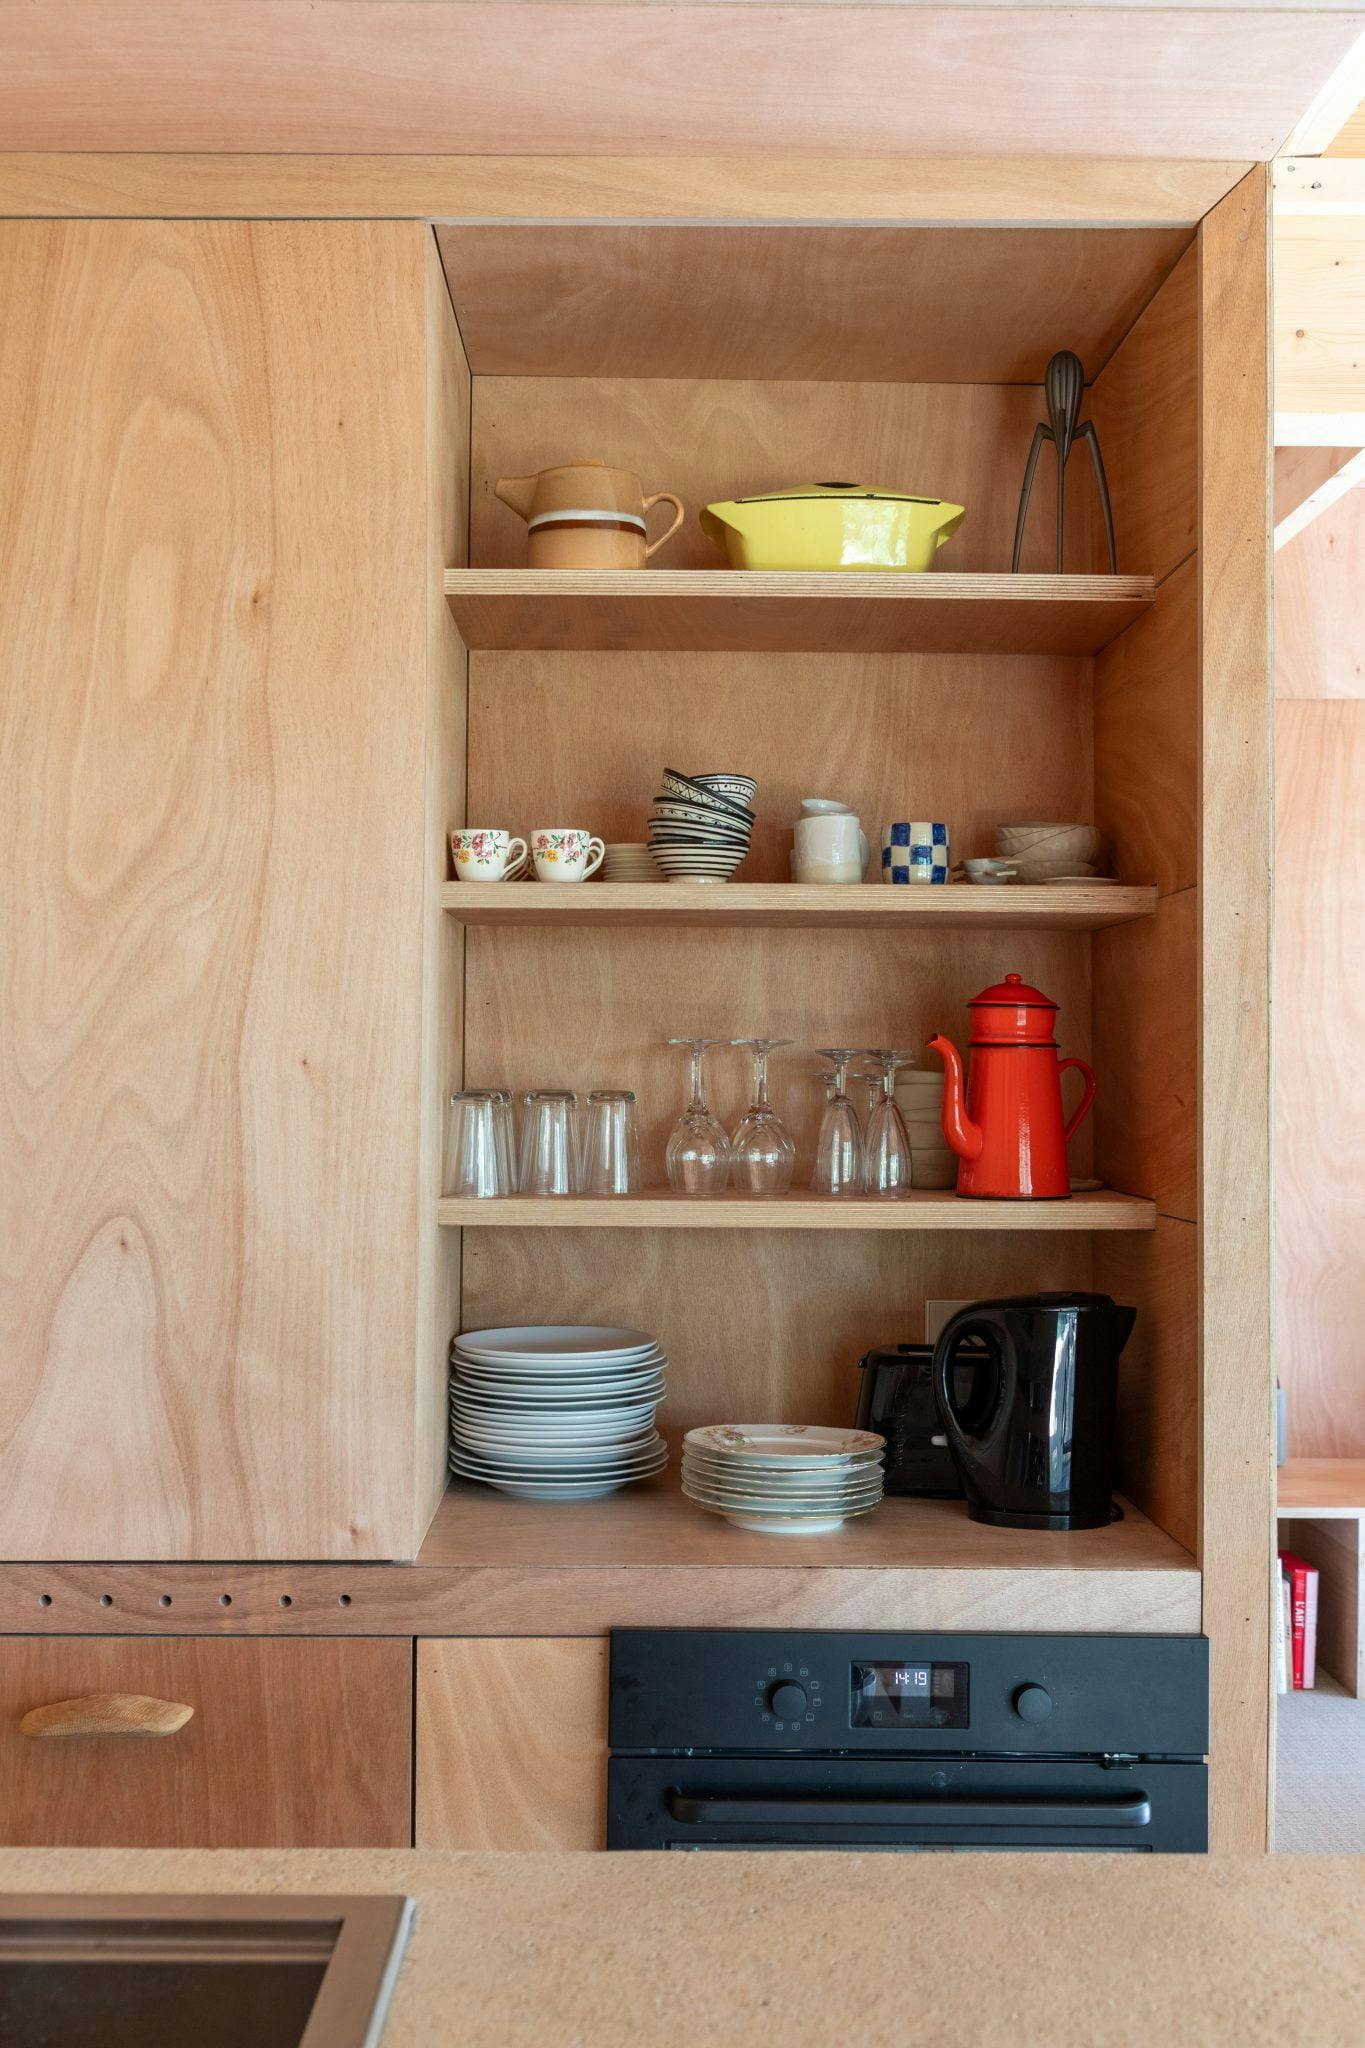 detail de la cuisine, tiroir en bois rempli de vaisselle